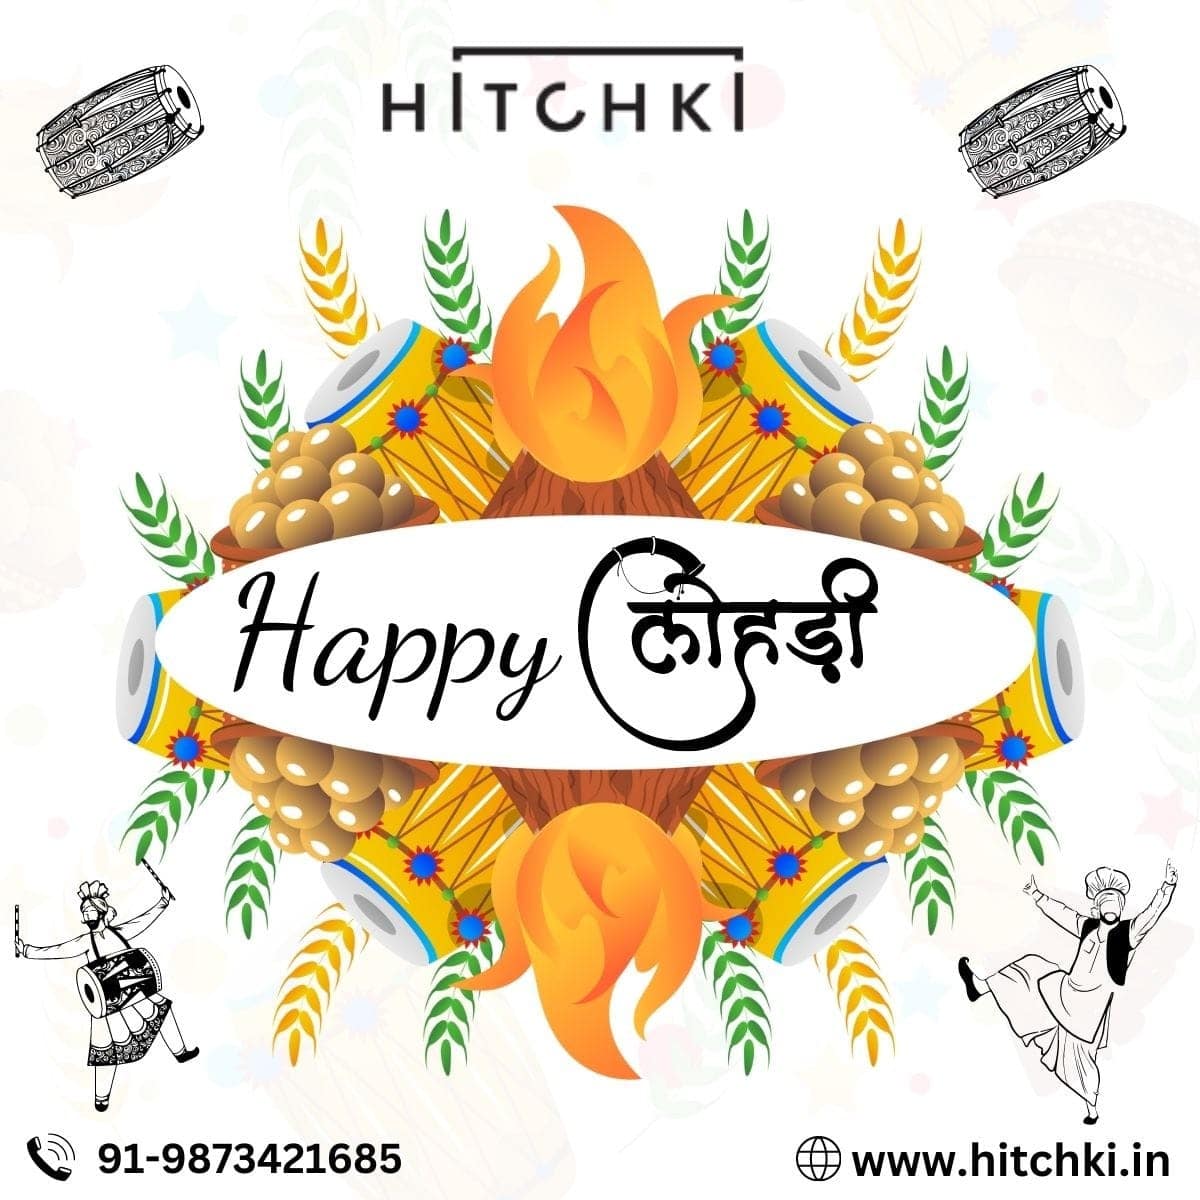 wish you a very happy lohri | HITCHKI